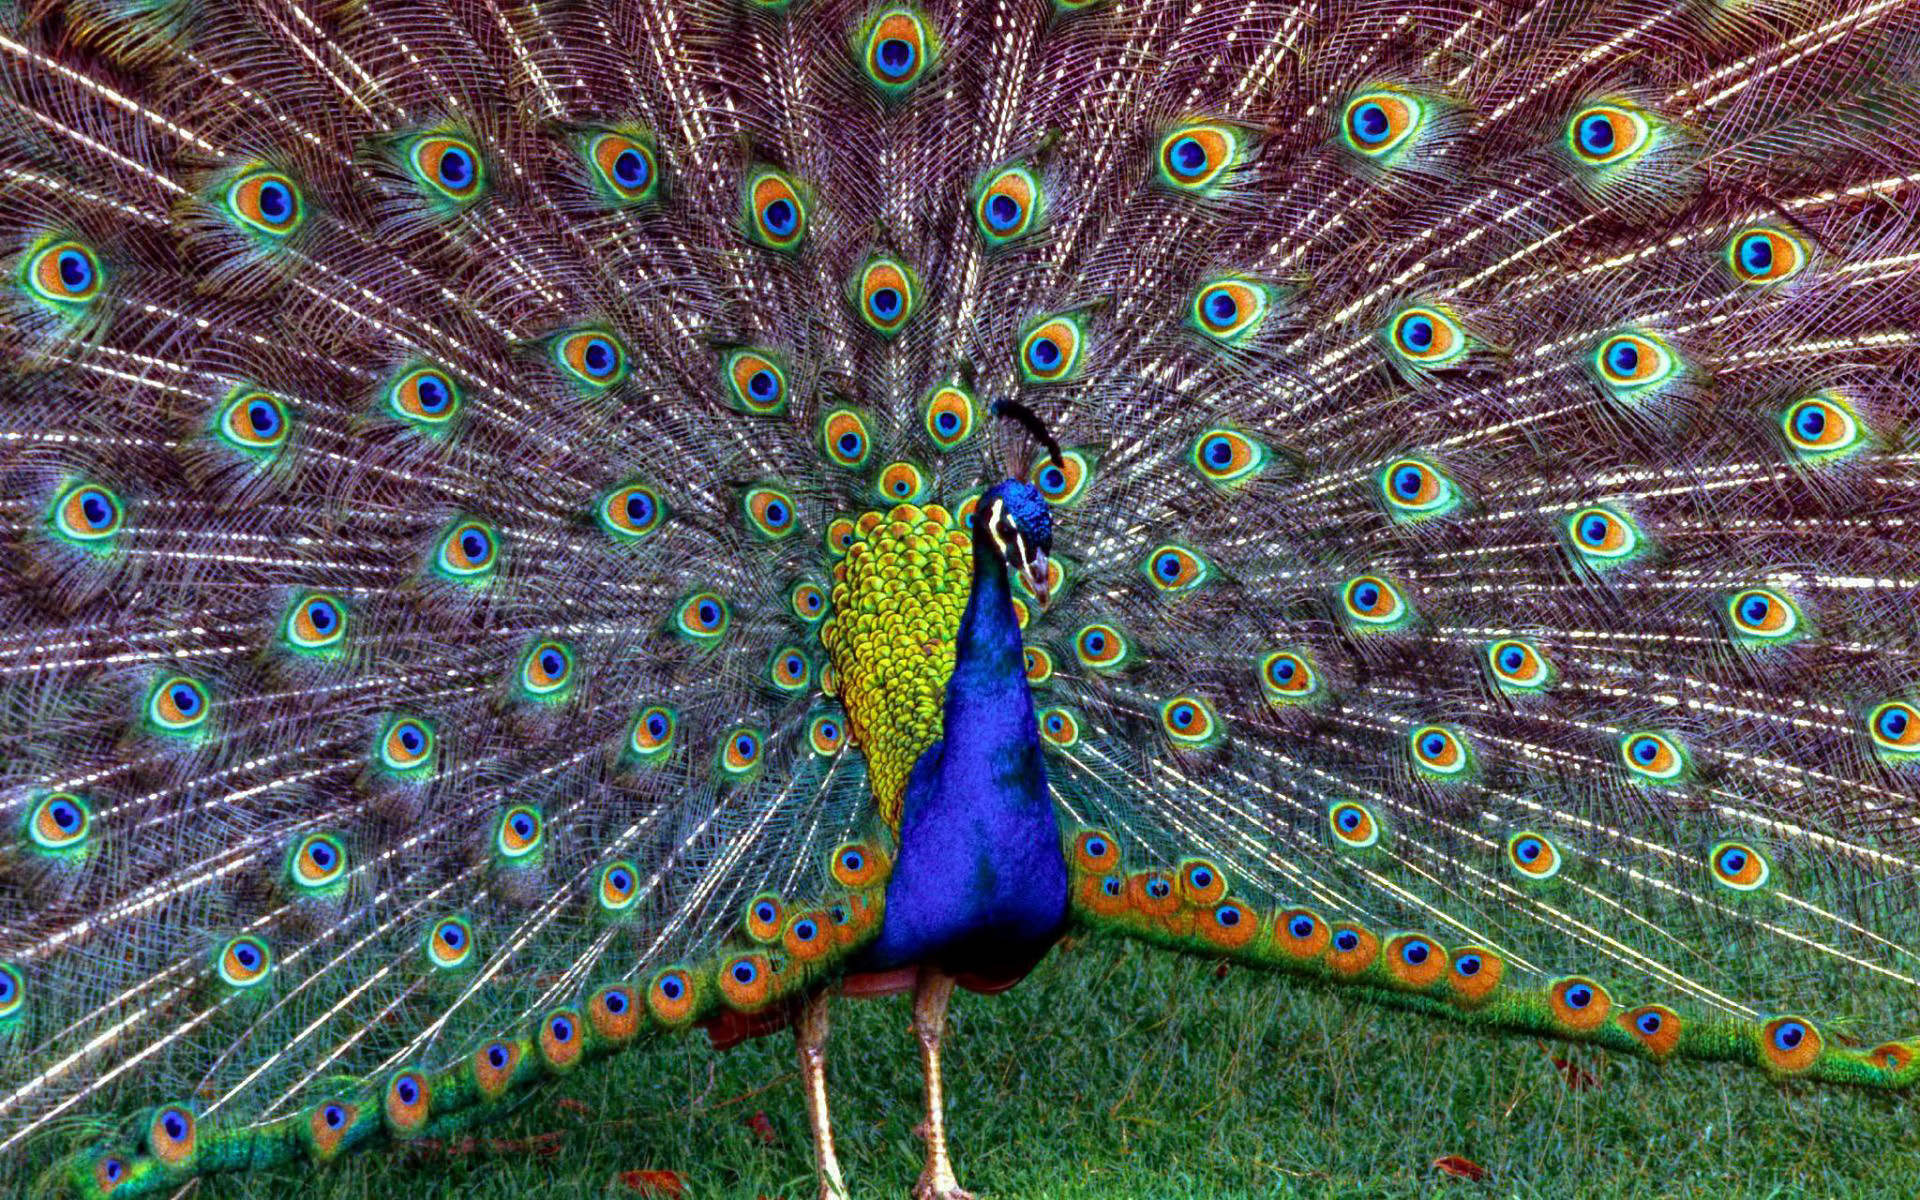 peacocks, animals, birds wallpaper for mobile